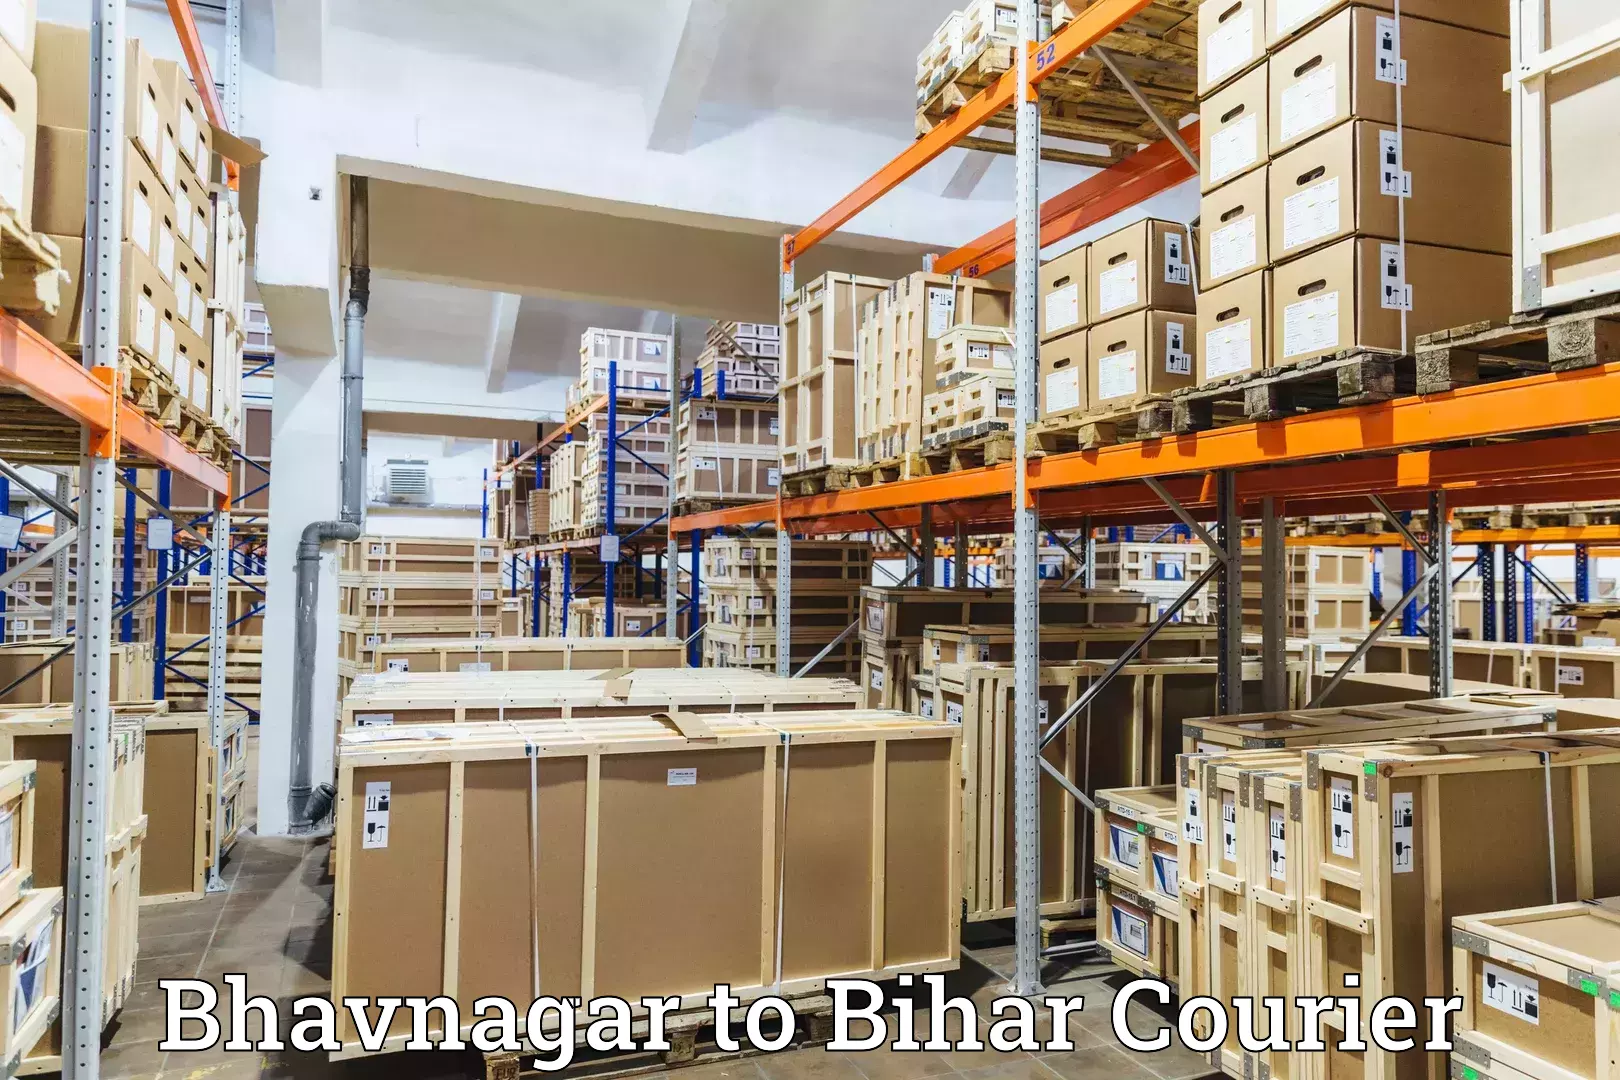 Efficient order fulfillment Bhavnagar to Bihar